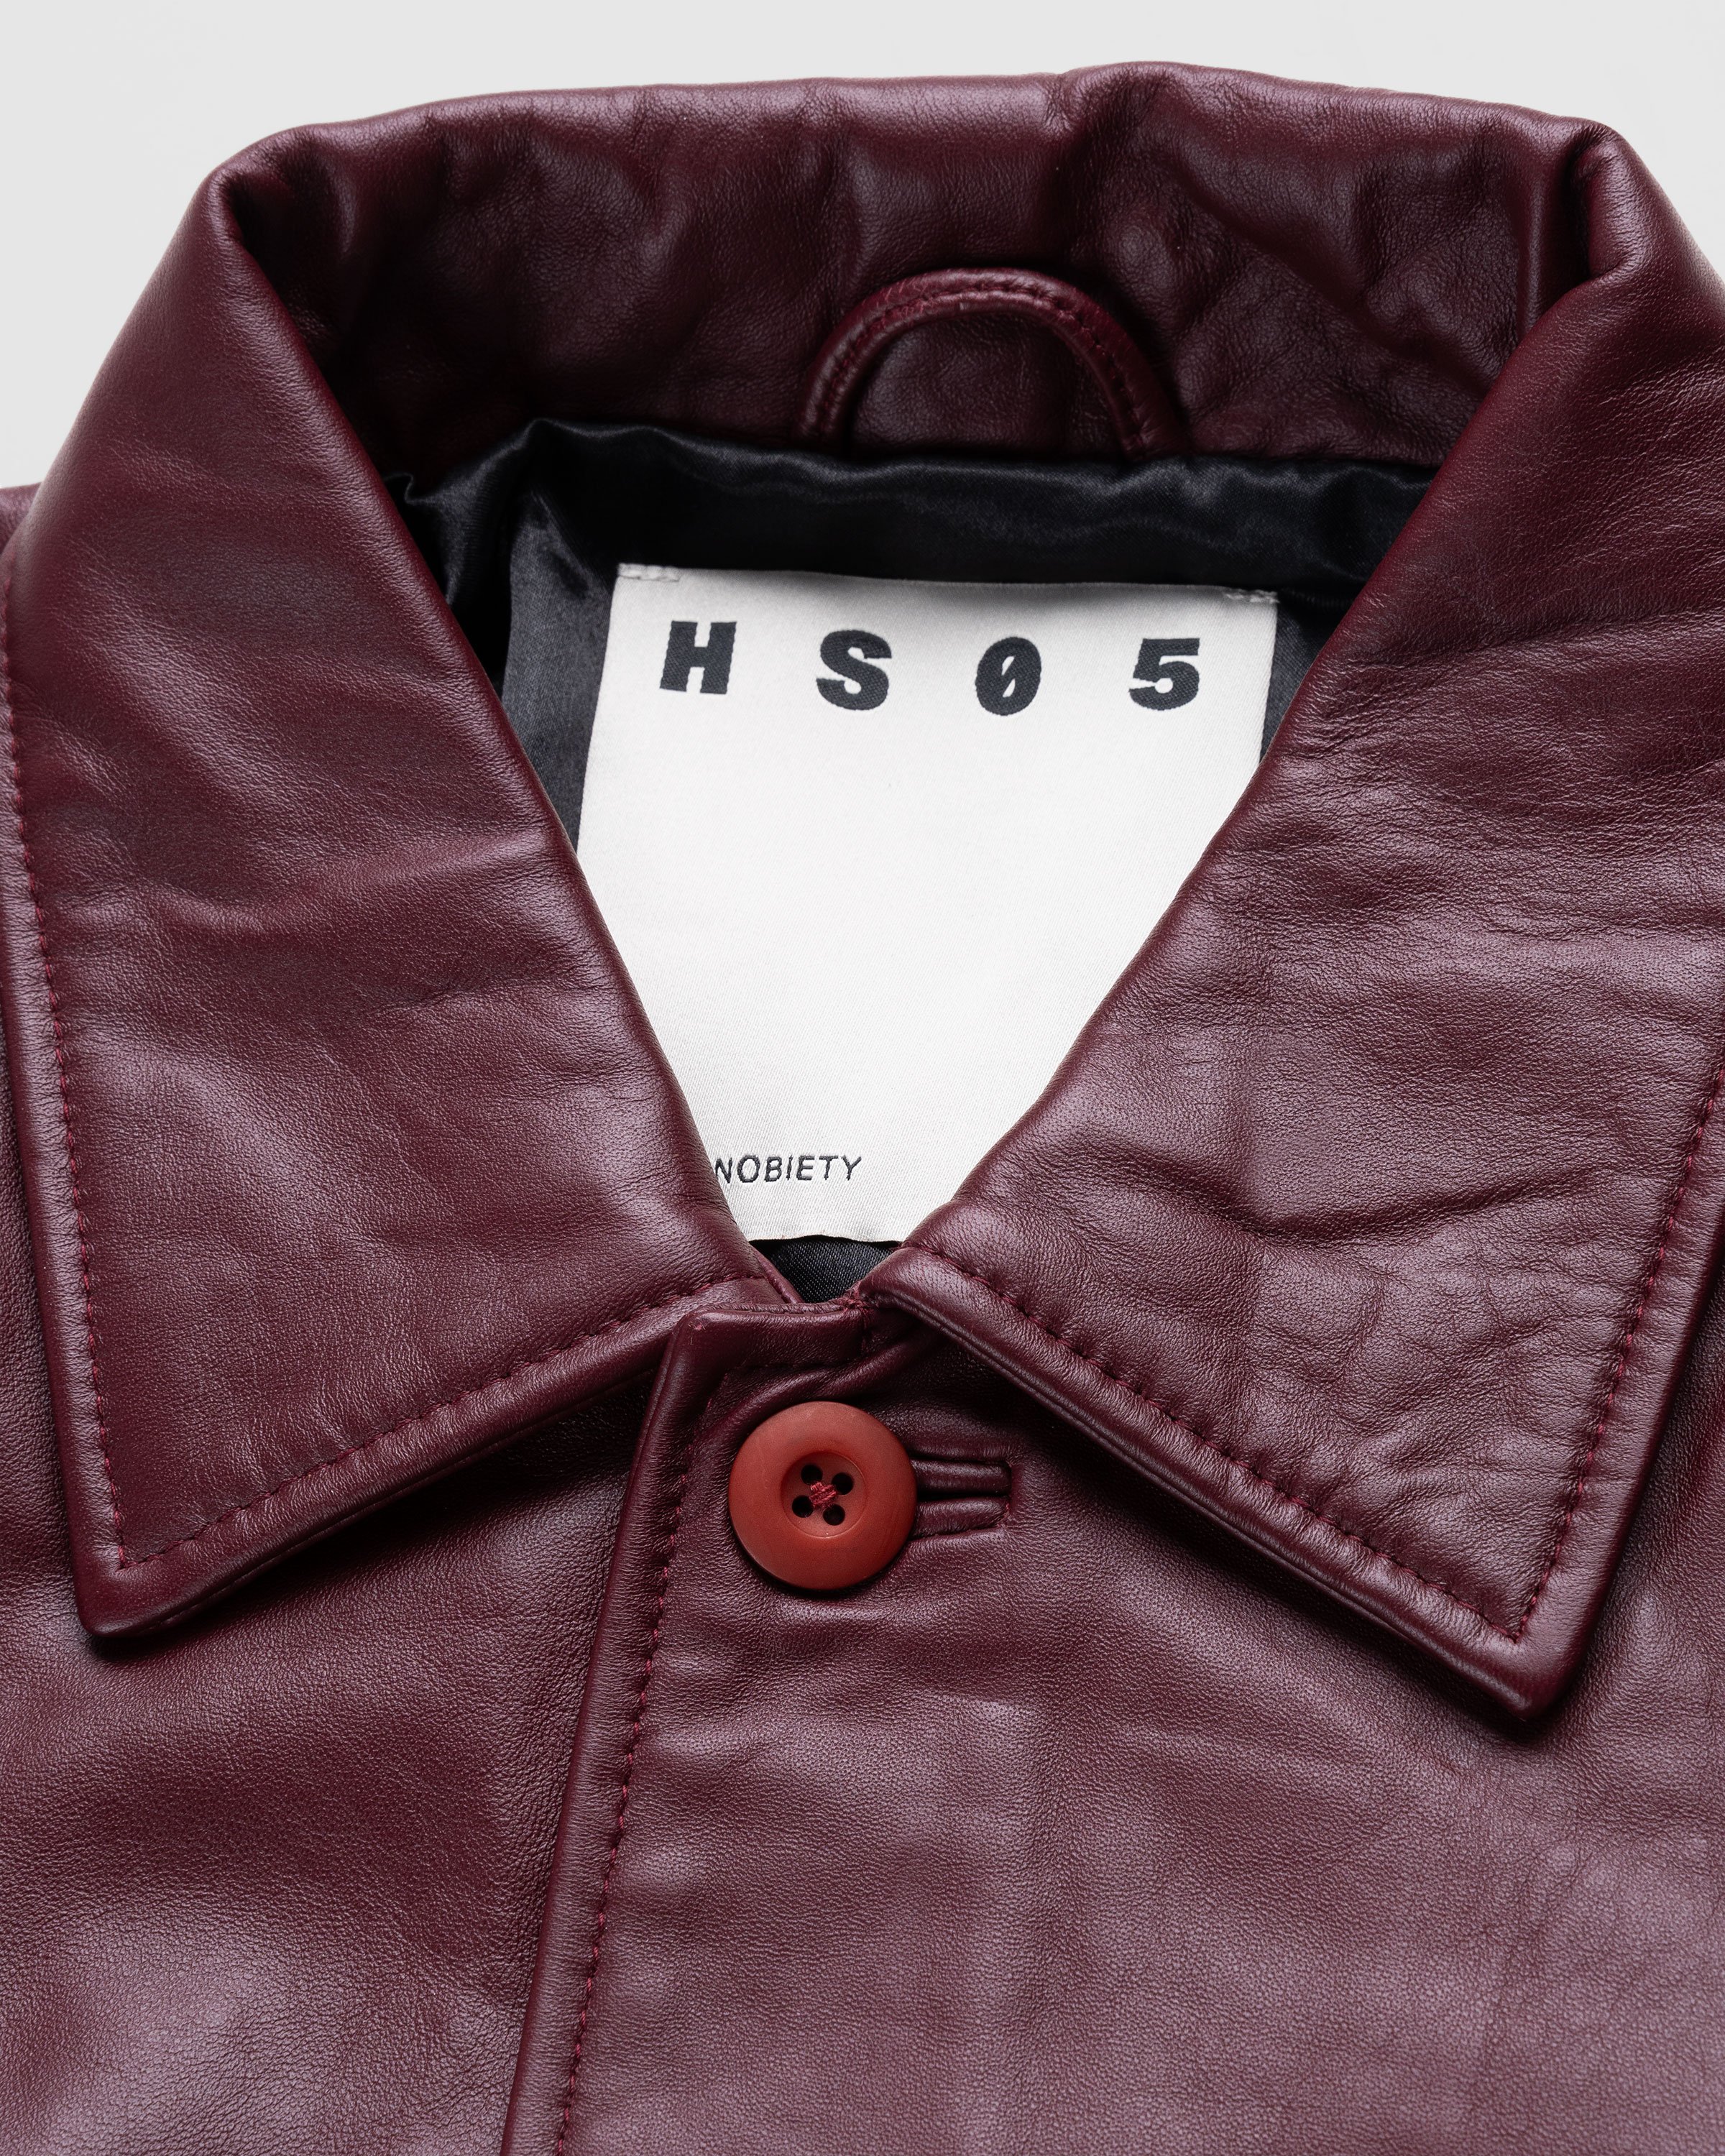 Highsnobiety - Neu York Leather Jacket Burgundy - Clothing - Red - Image 6